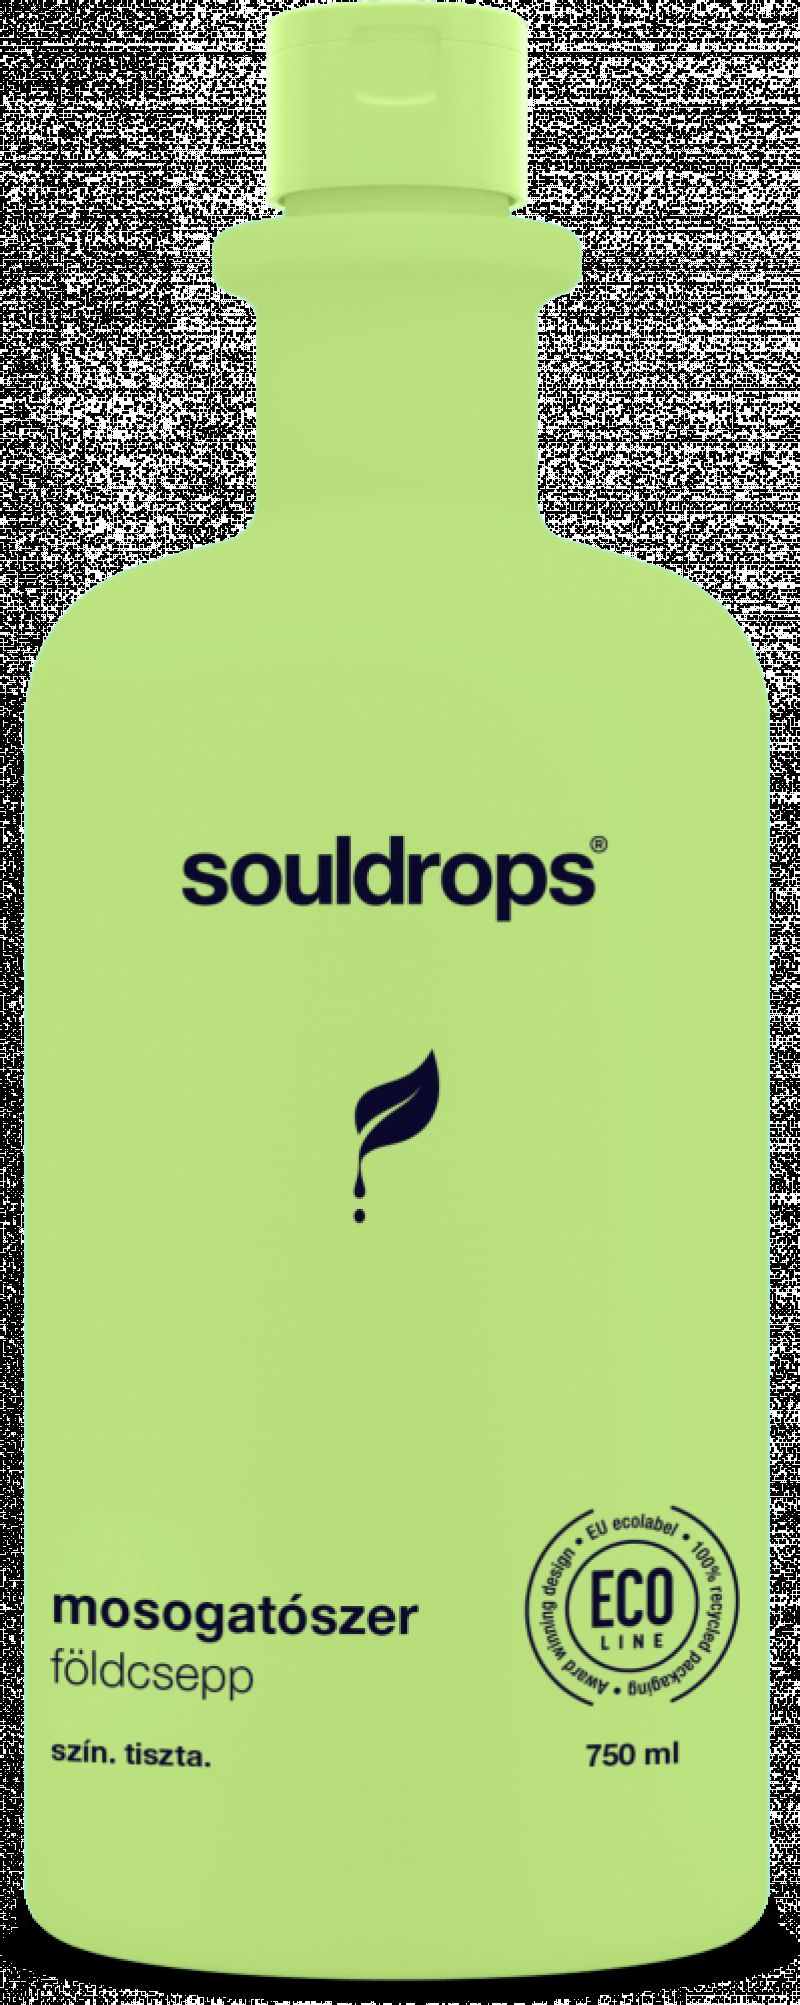 Souldrops mosogatószer – Földcsepp (750 ml)